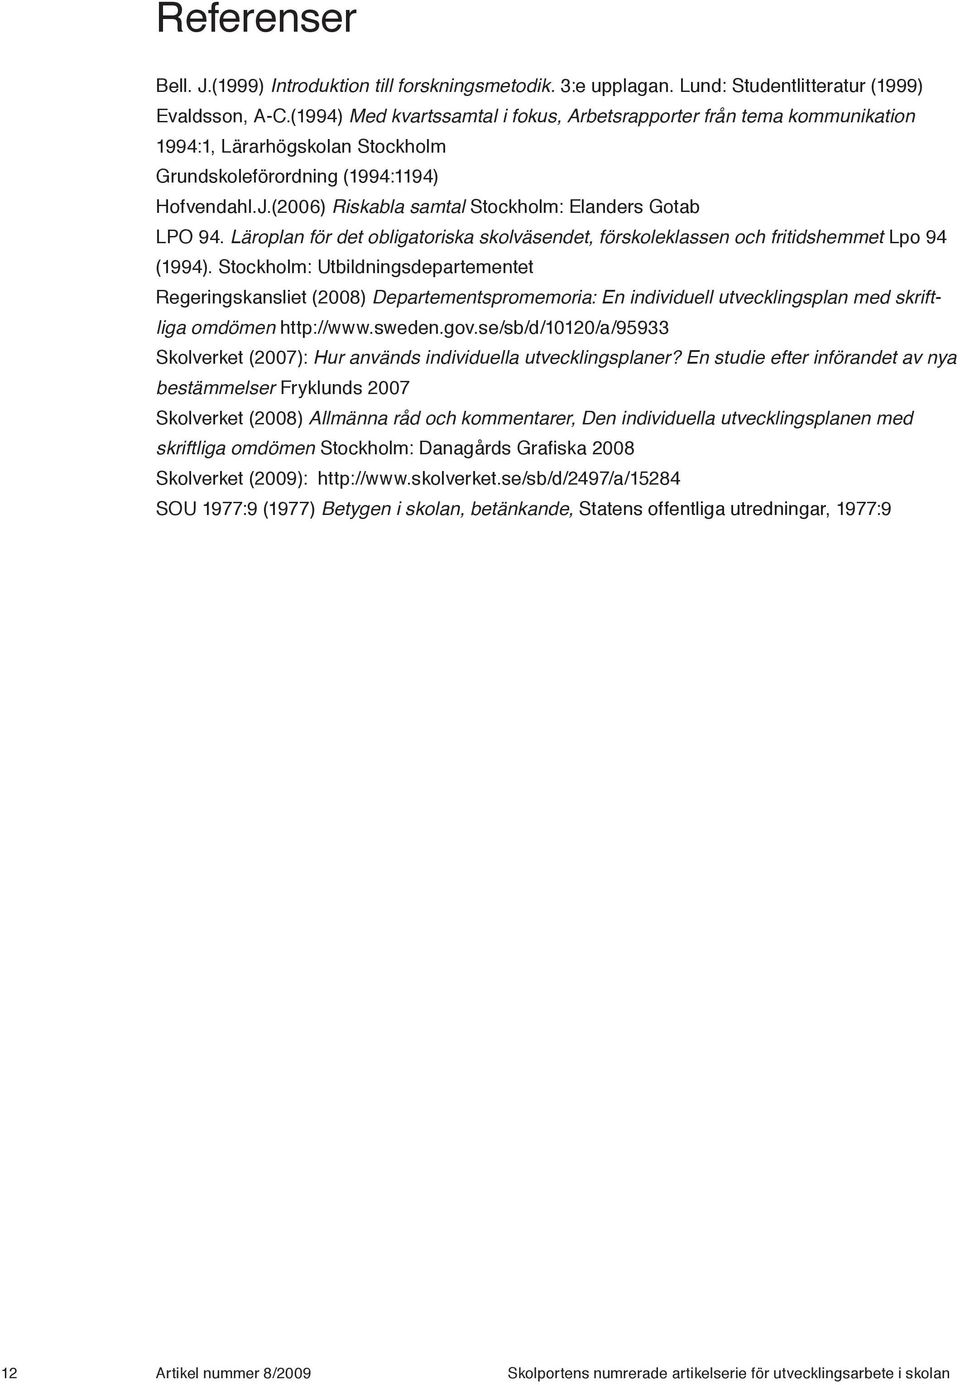 (2006) Riskabla samtal Stockholm: Elanders Gotab LPO 94. Läroplan för det obligatoriska skolväsendet, förskoleklassen och fritidshemmet Lpo 94 (1994).